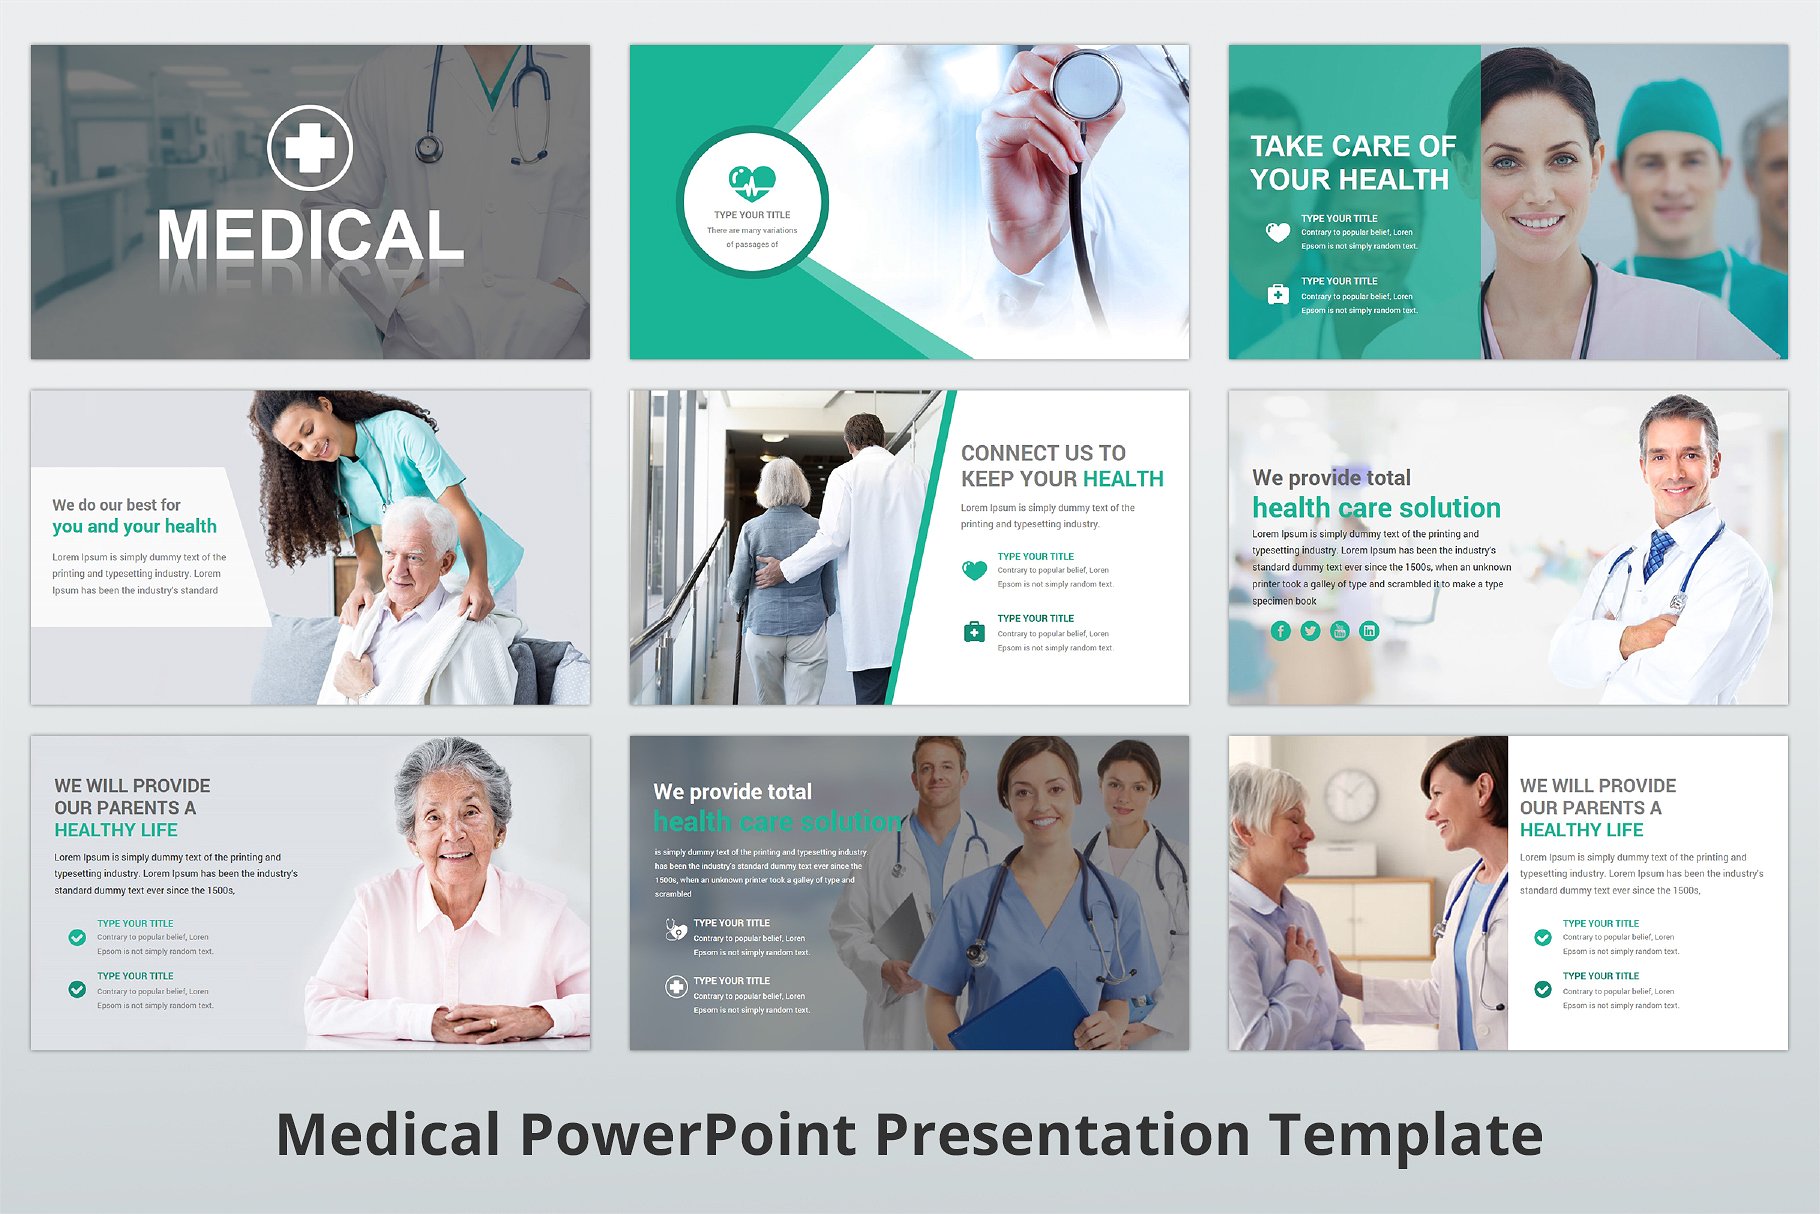 高品质医疗行业演示的PPT模板下载 Medical PowerPoint Template [pptx]插图(4)